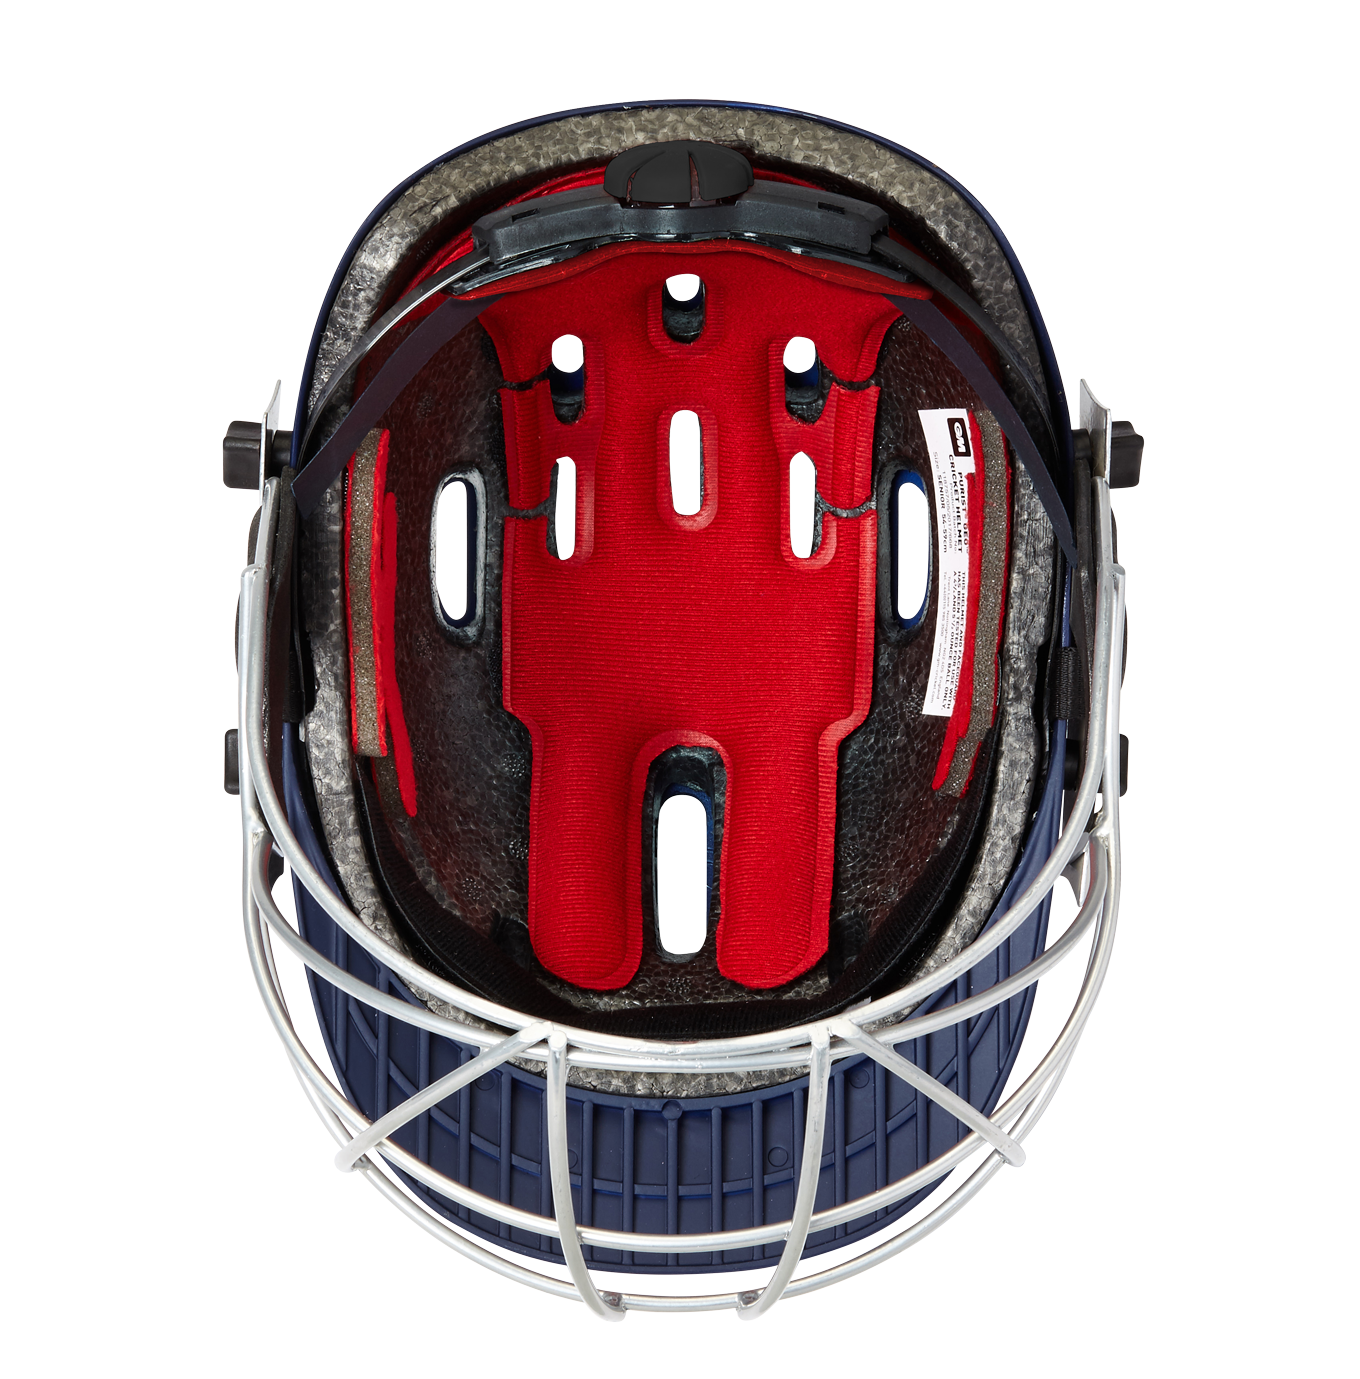 Gunn & Moore Purist Geo II Helmet